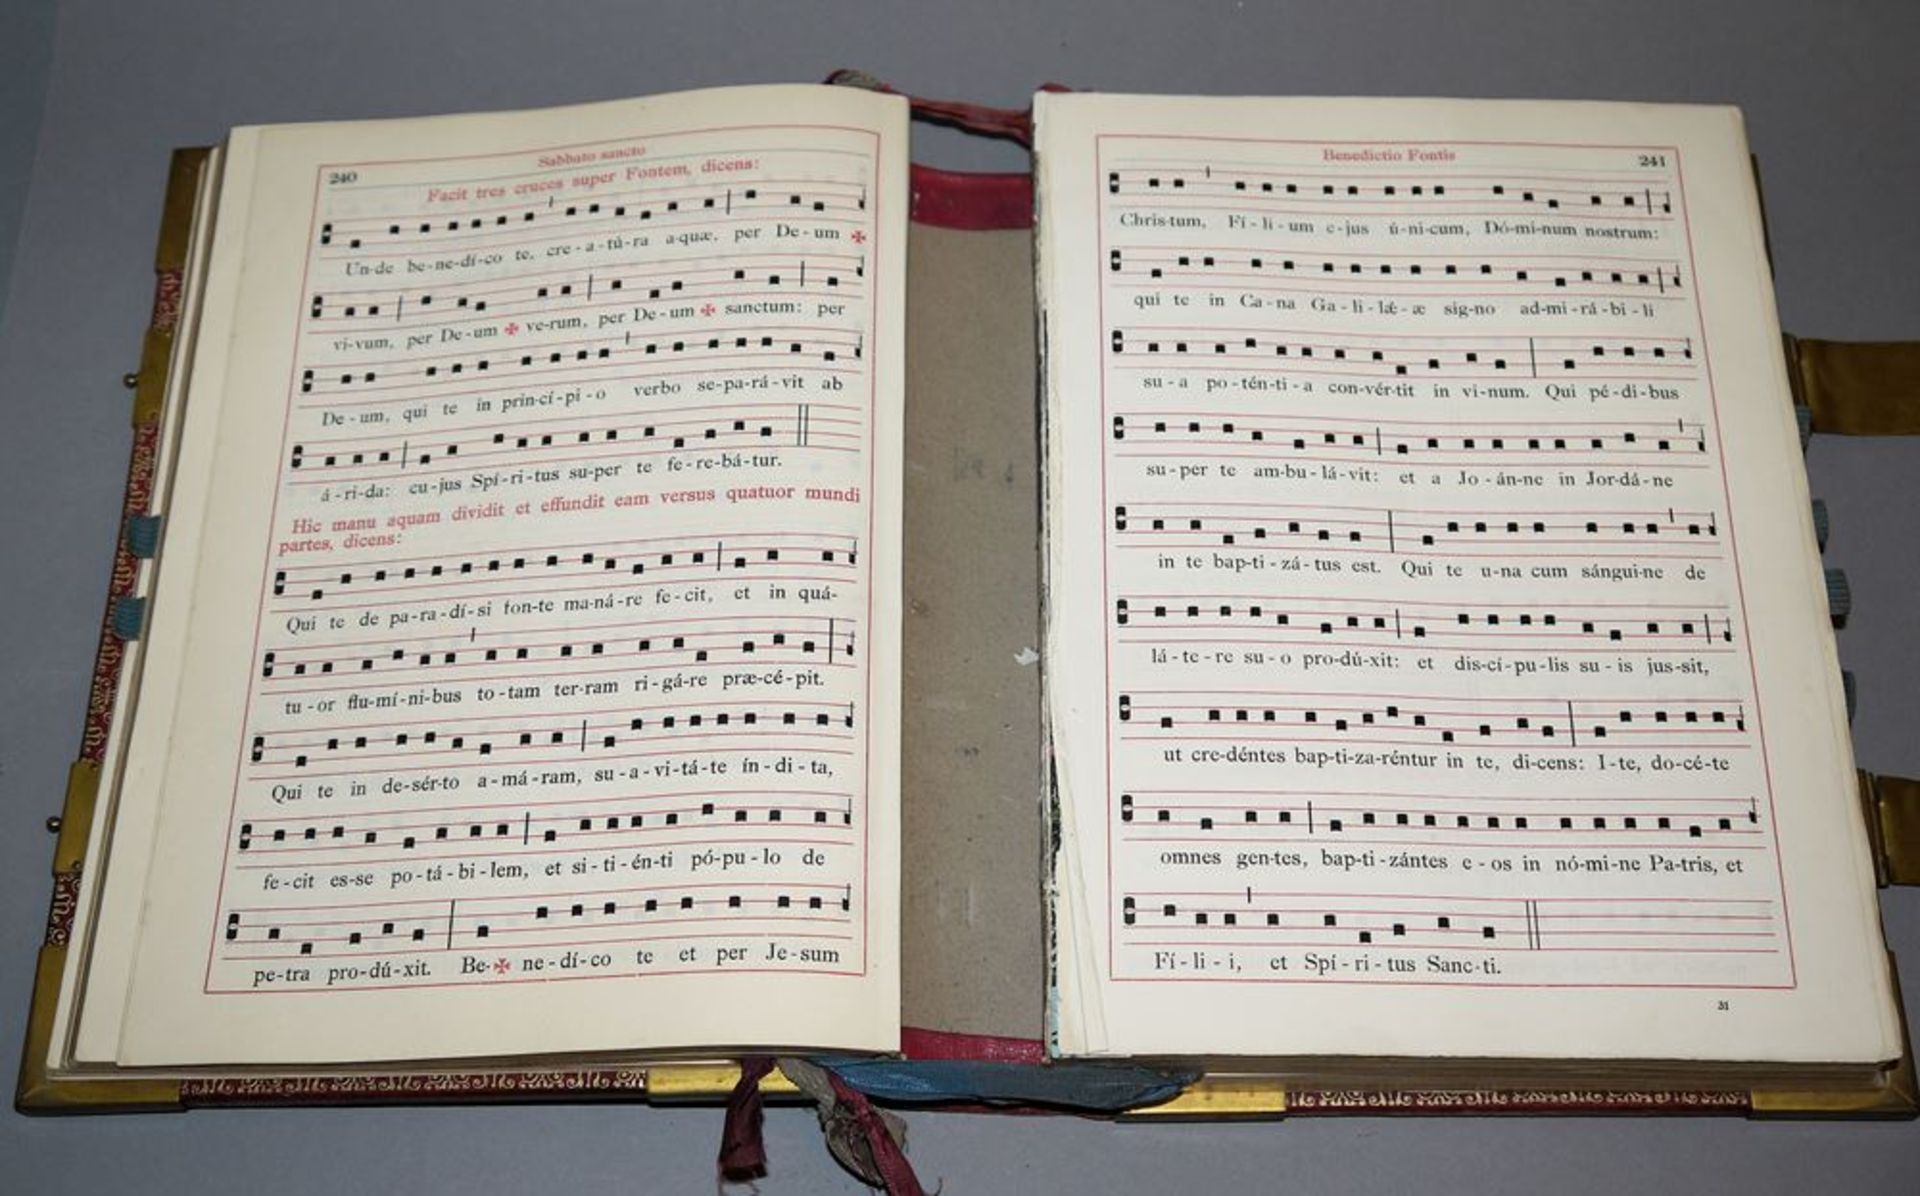 Missale Romanum, in Leder gebundene Prachtausgabe von 1923, Geschenk des Grafen - Bild 3 aus 3